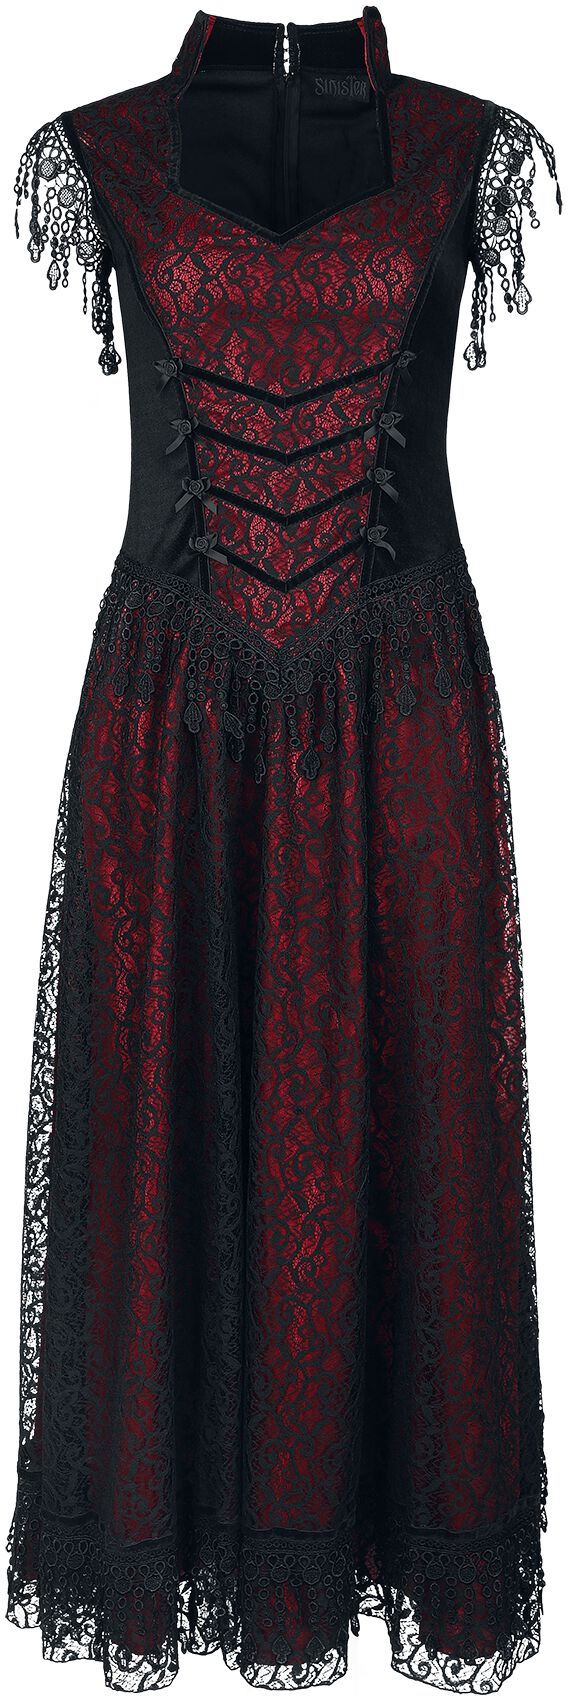 Sinister Gothic - Mittelalter Kleid lang - Gothic Dress - S bis XXL - für Damen - Größe S - schwarz/rot